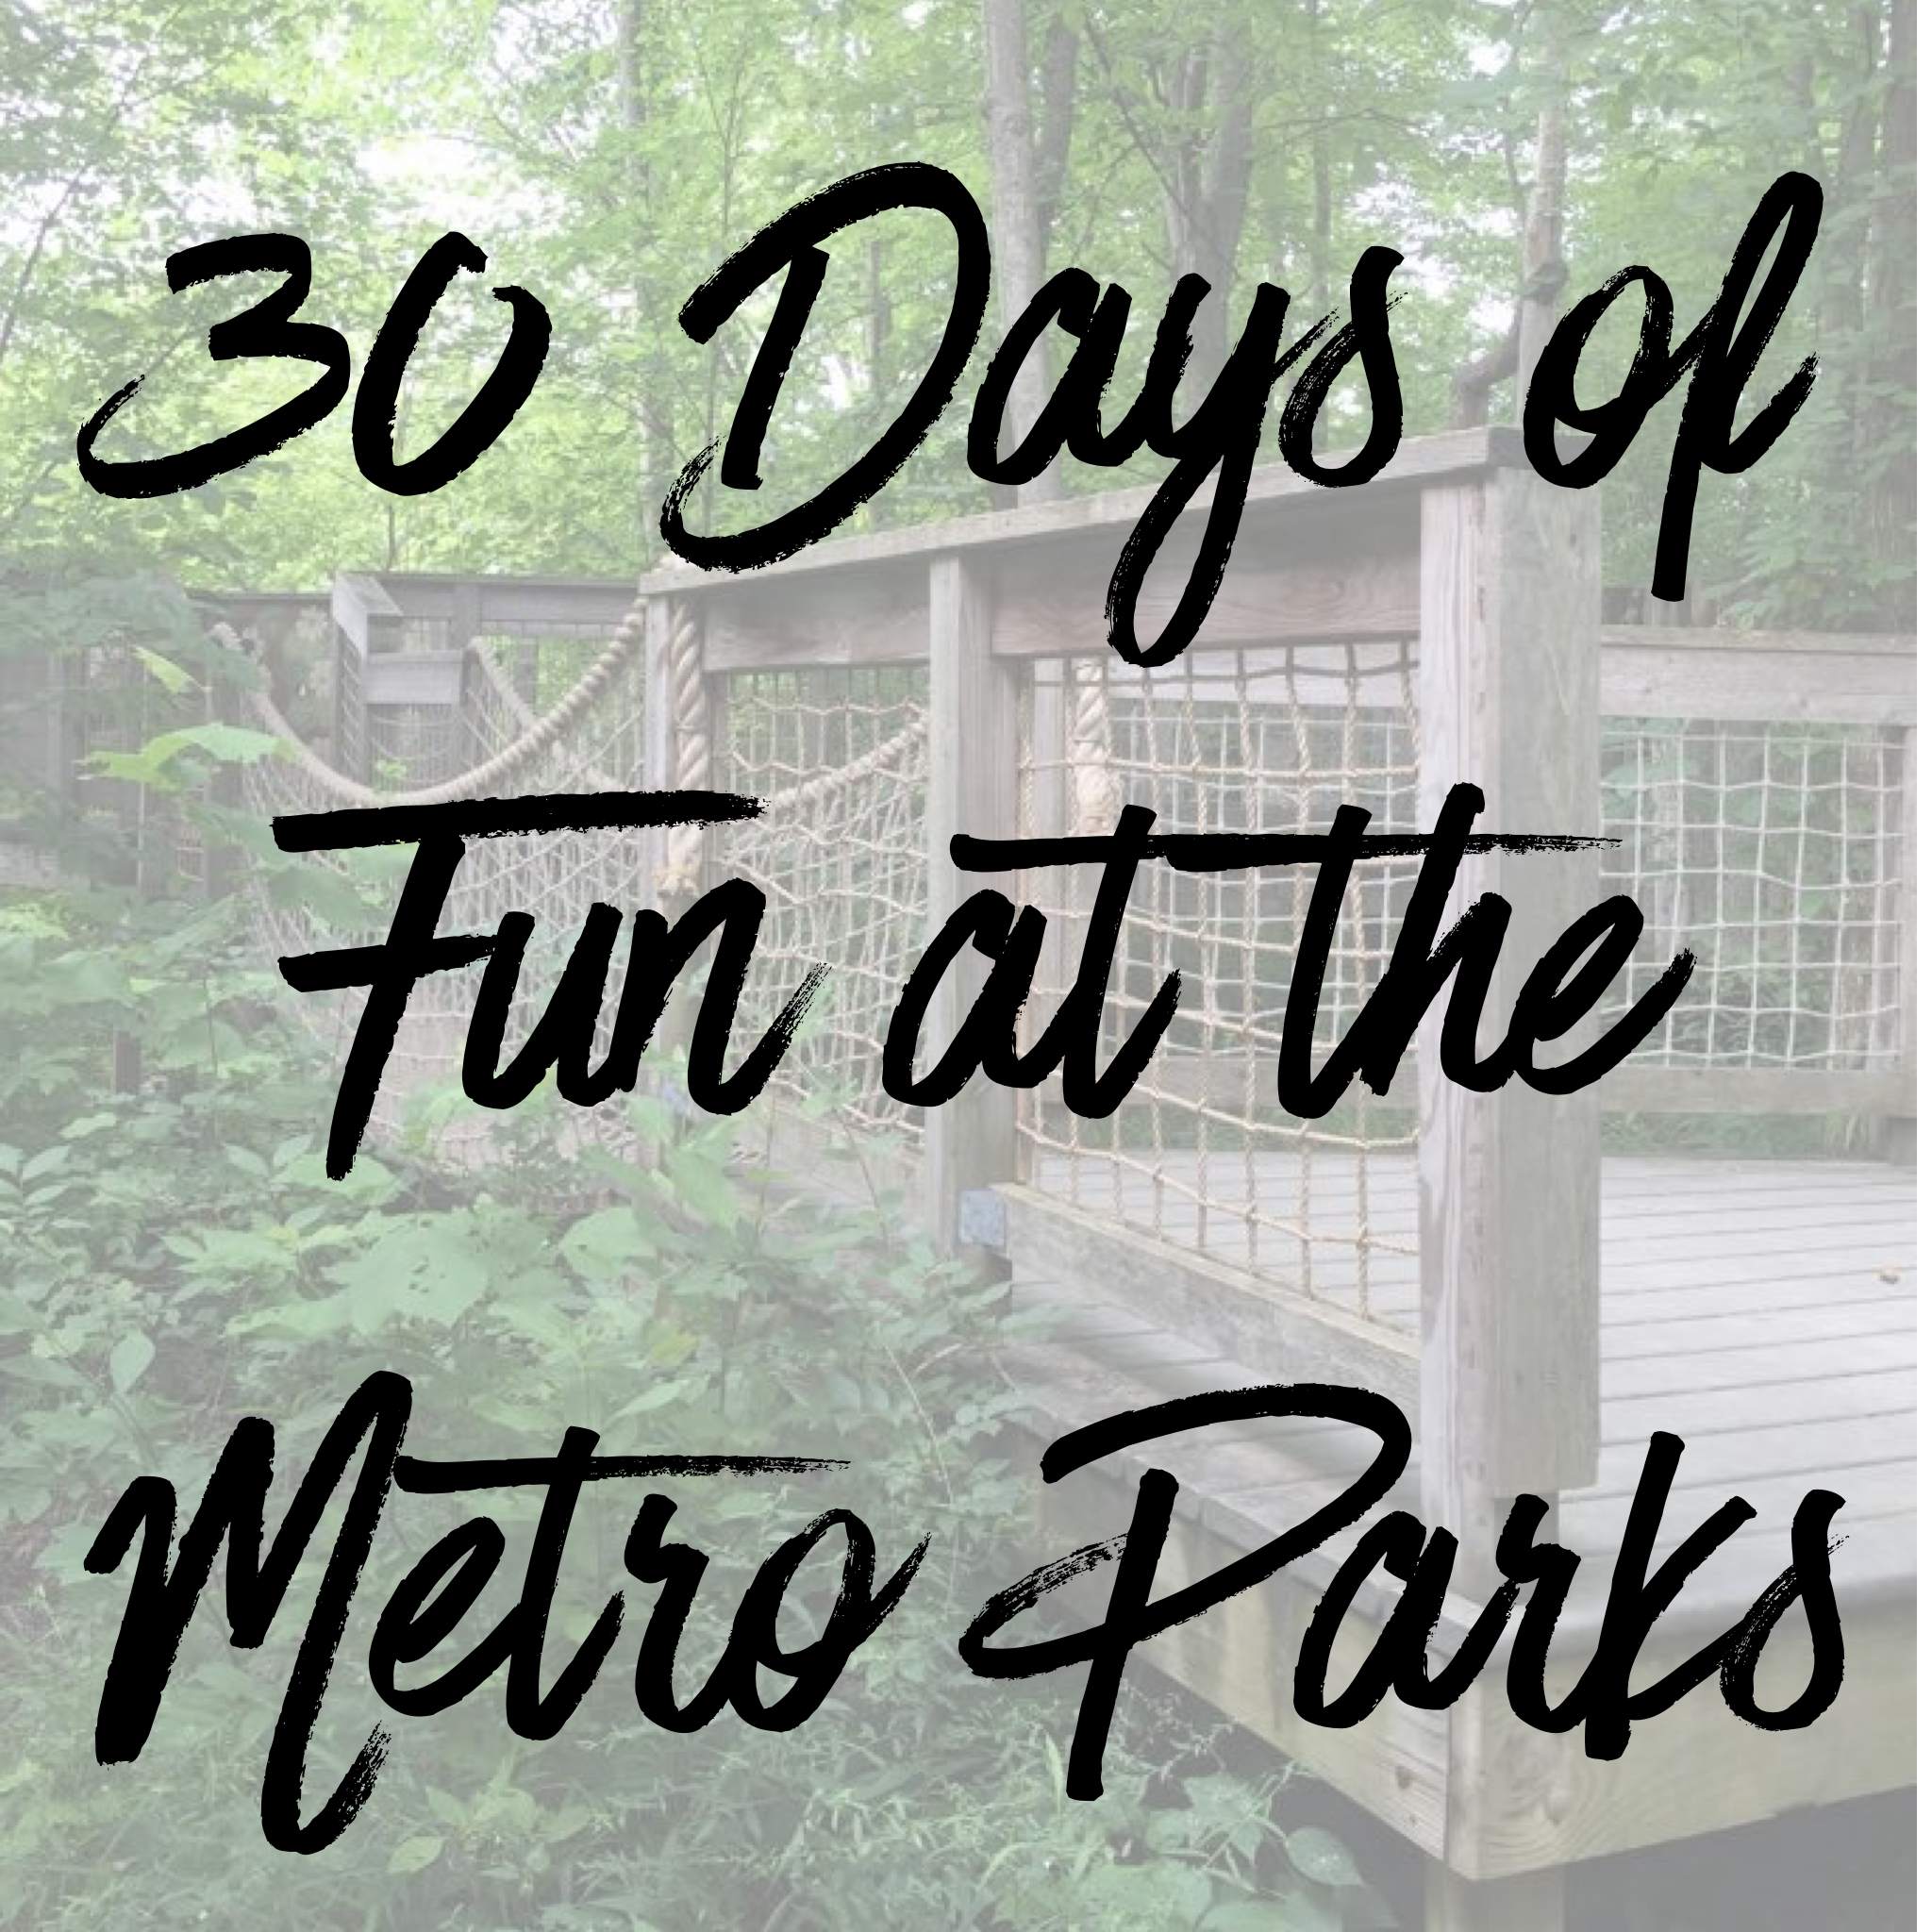 30 Days of Metro Park Fun